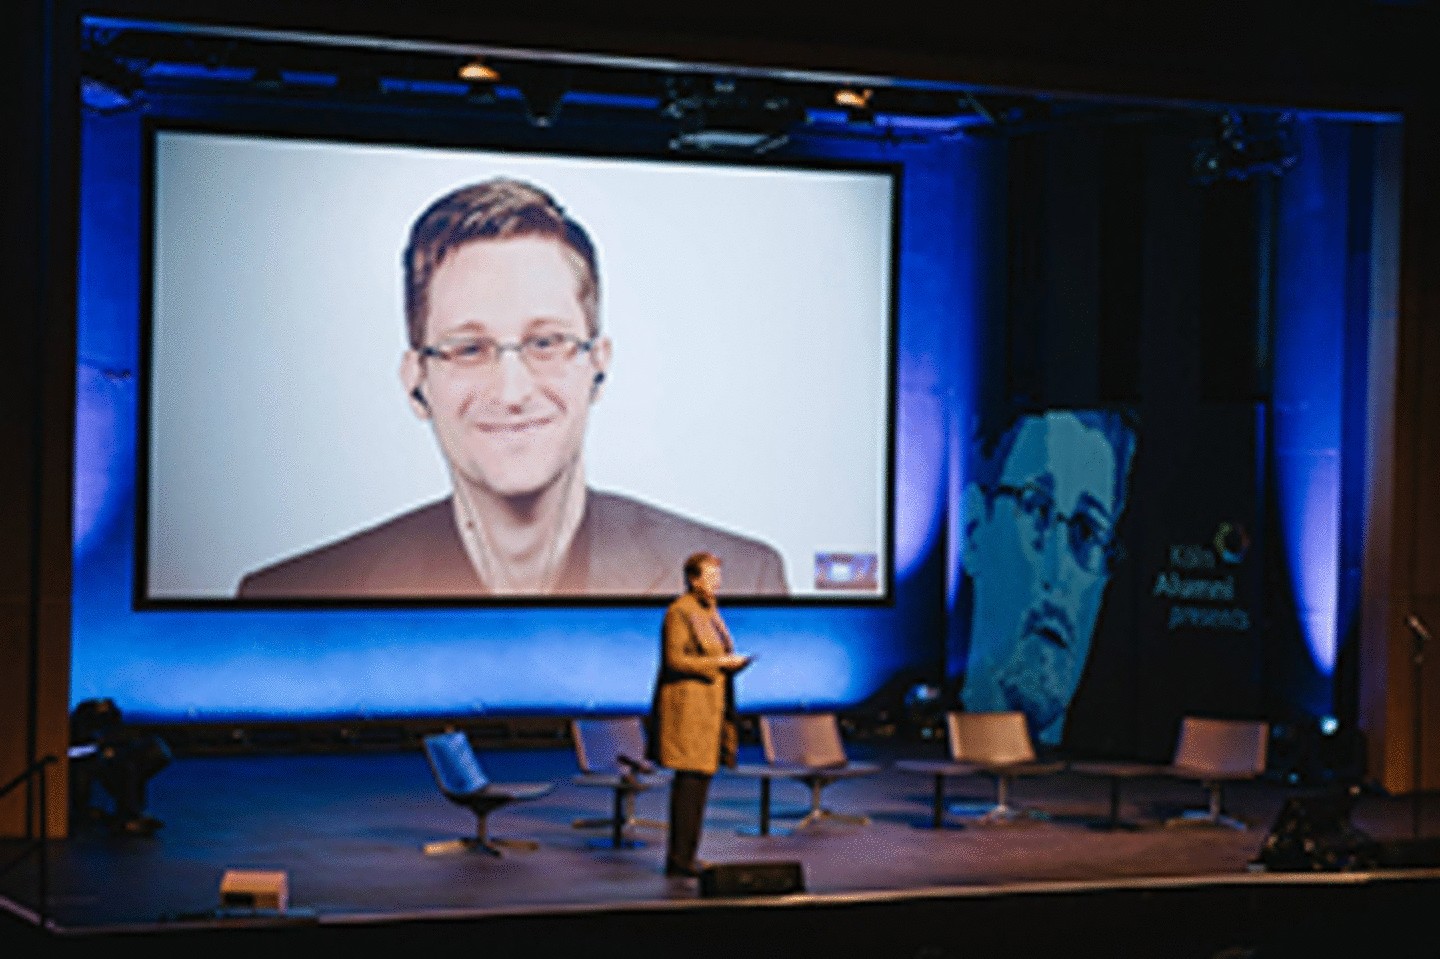 Livestream with Edward Snowden